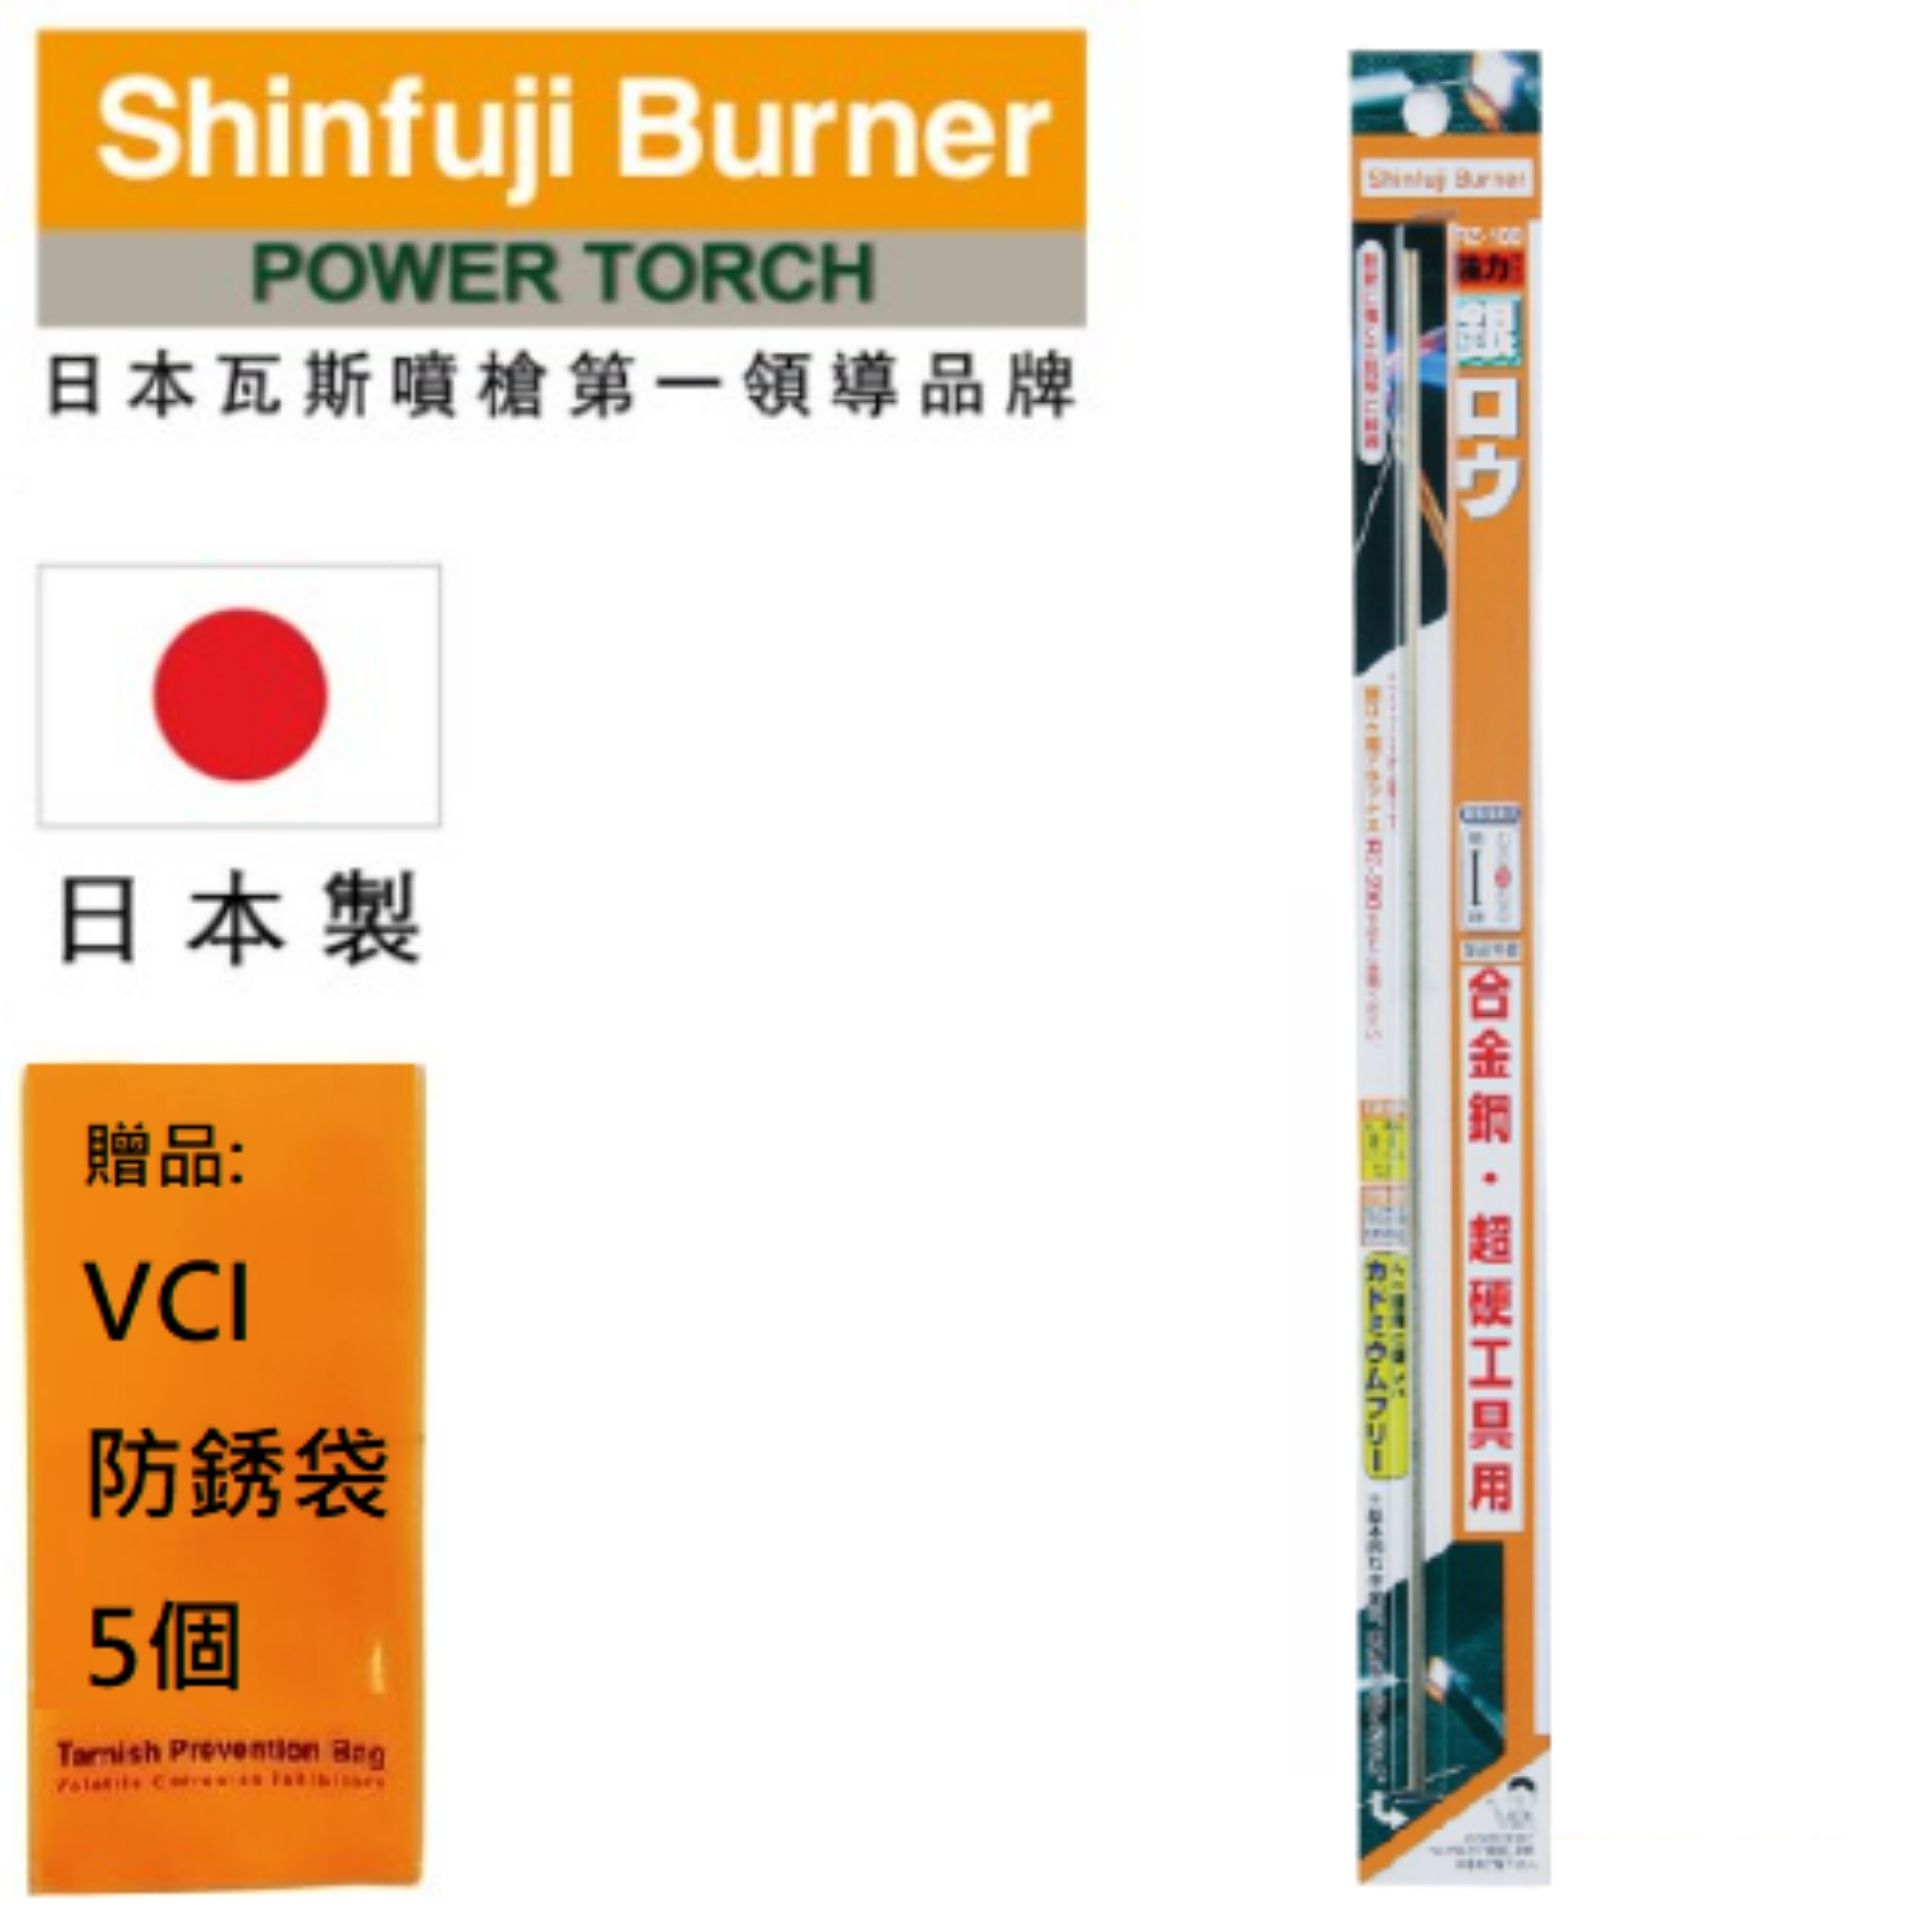 【SHINFUJI 新富士】 強力銀焊藥 優異的耐熱性和抗衝擊性。